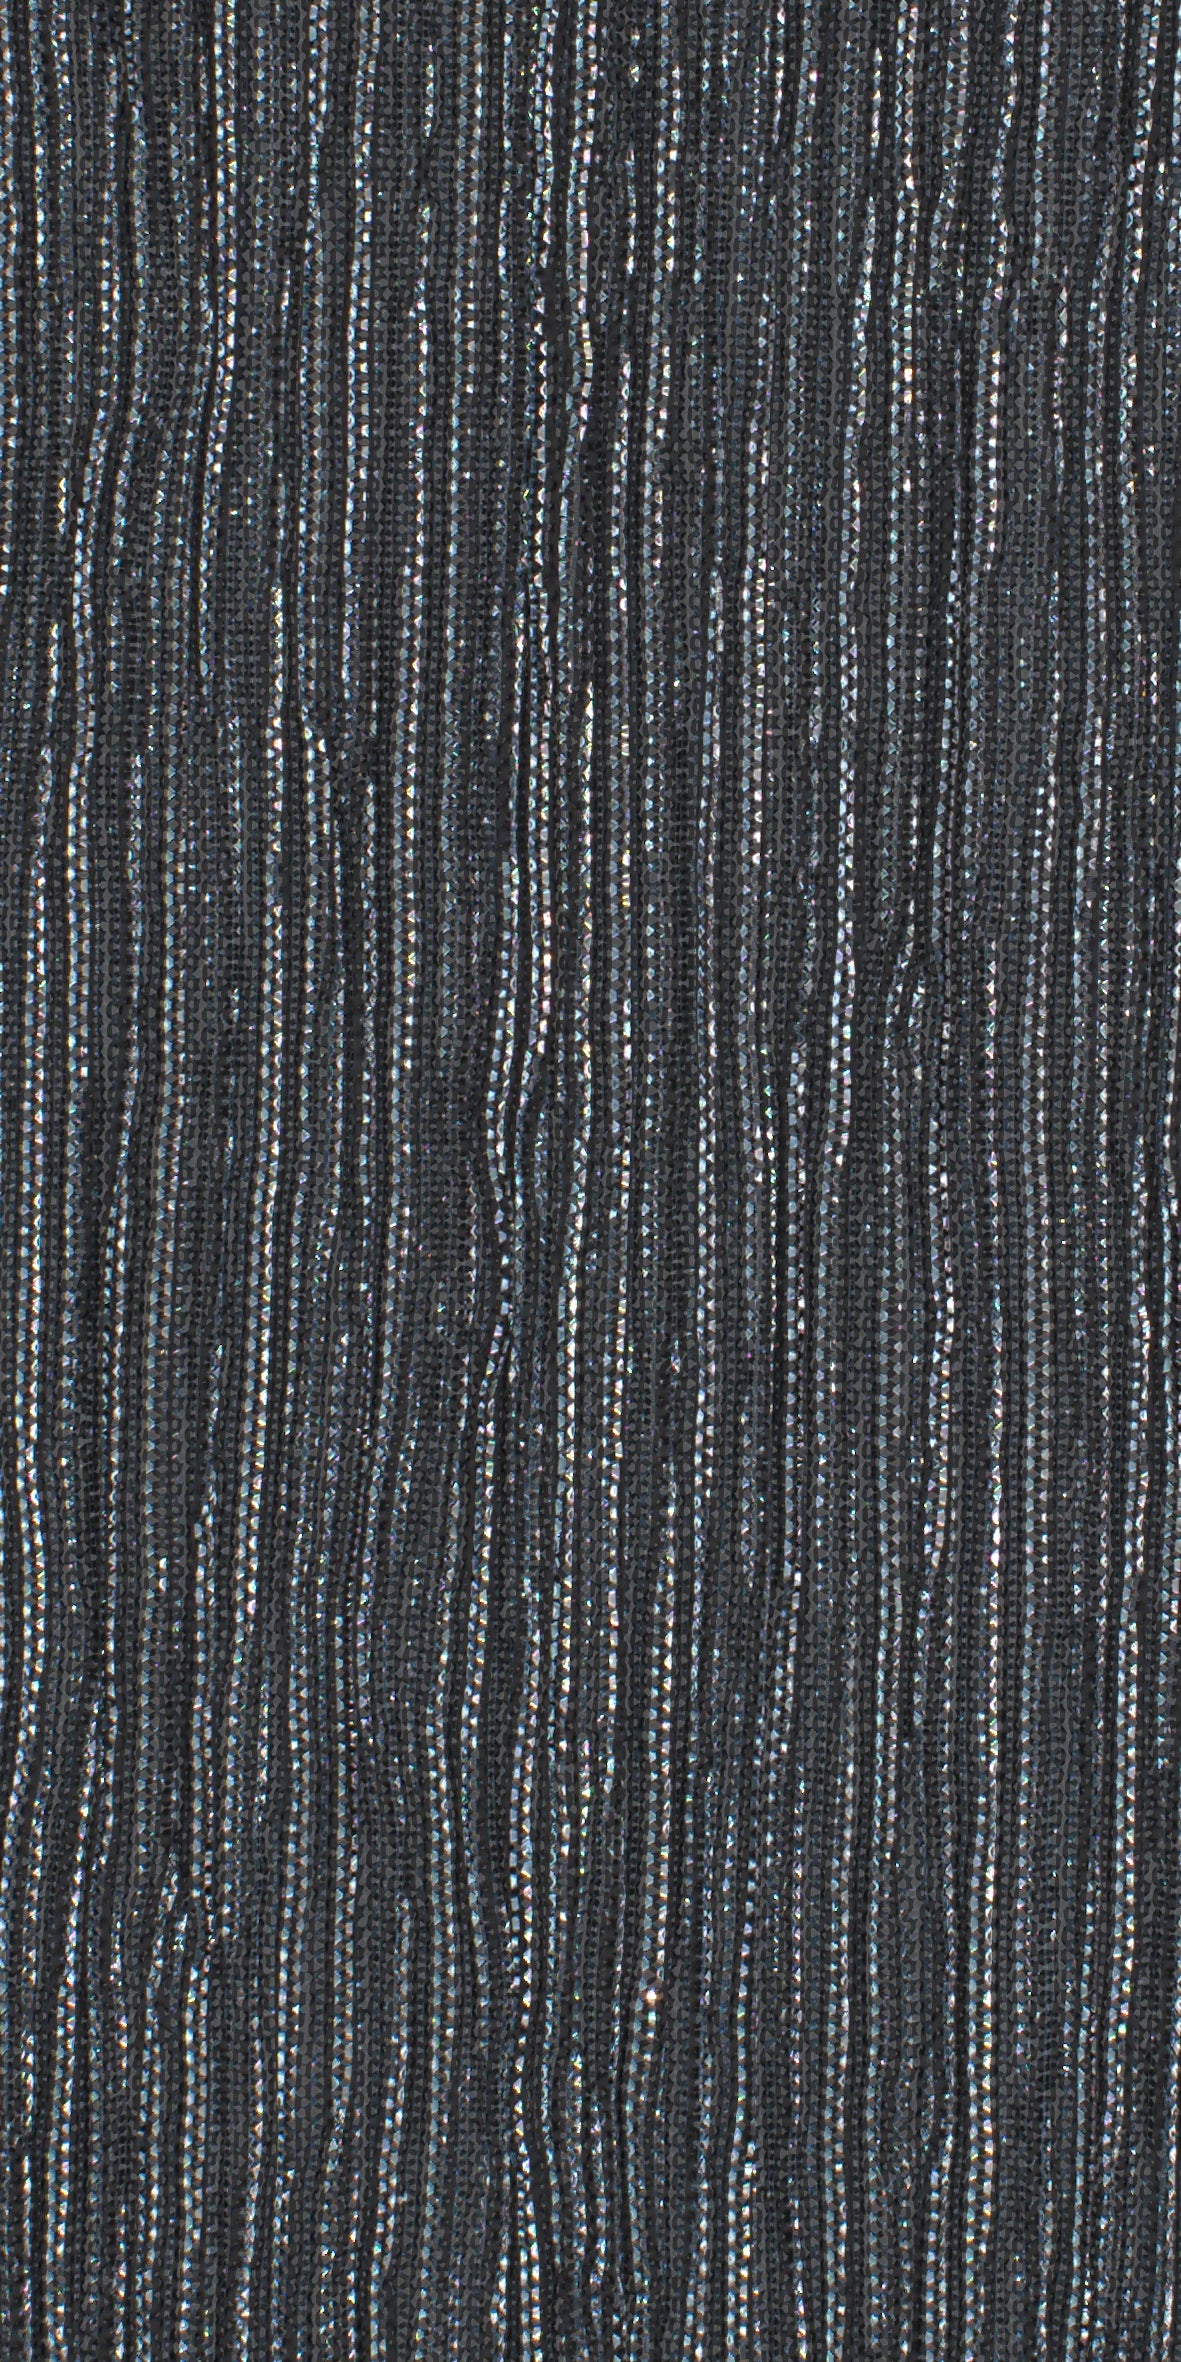 12006-09 Silver Black Metallic Pleat Plain Dyed Blend 126g/yd 56&quot; black blend knit metallic plain dyed pleat ppl new silver Metallic, Pleat - knit fabric - woven fabric - fabric company - fabric wholesale - fabric b2b - fabric factory - high quality fabric - hong kong fabric - fabric hk - acetate fabric - cotton fabric - linen fabric - metallic fabric - nylon fabric - polyester fabric - spandex fabric - chun wing hing - cwh hk - fabric worldwide ship - 針織布 - 梳織布 - 布料公司- 布料批發 - 香港布料 - 秦榮興